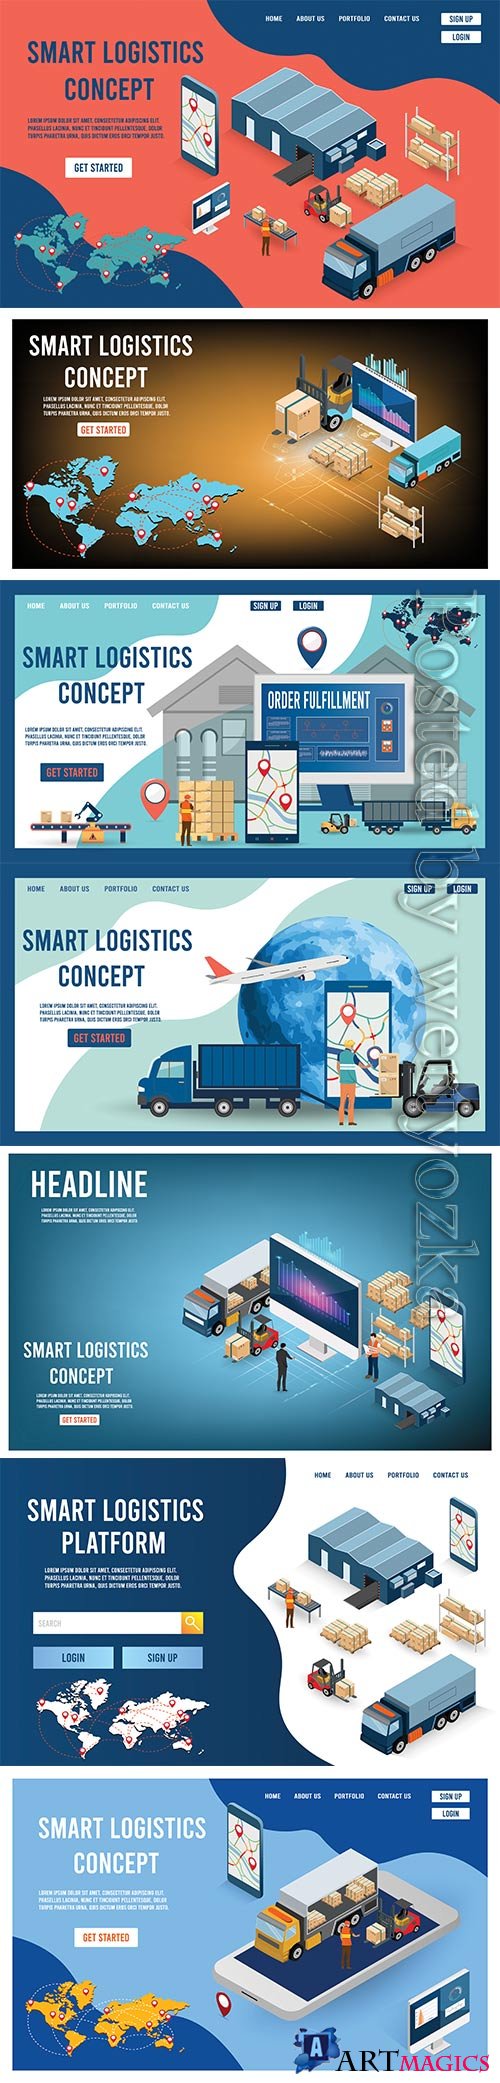 Modern flat design concept of Smart Logistics